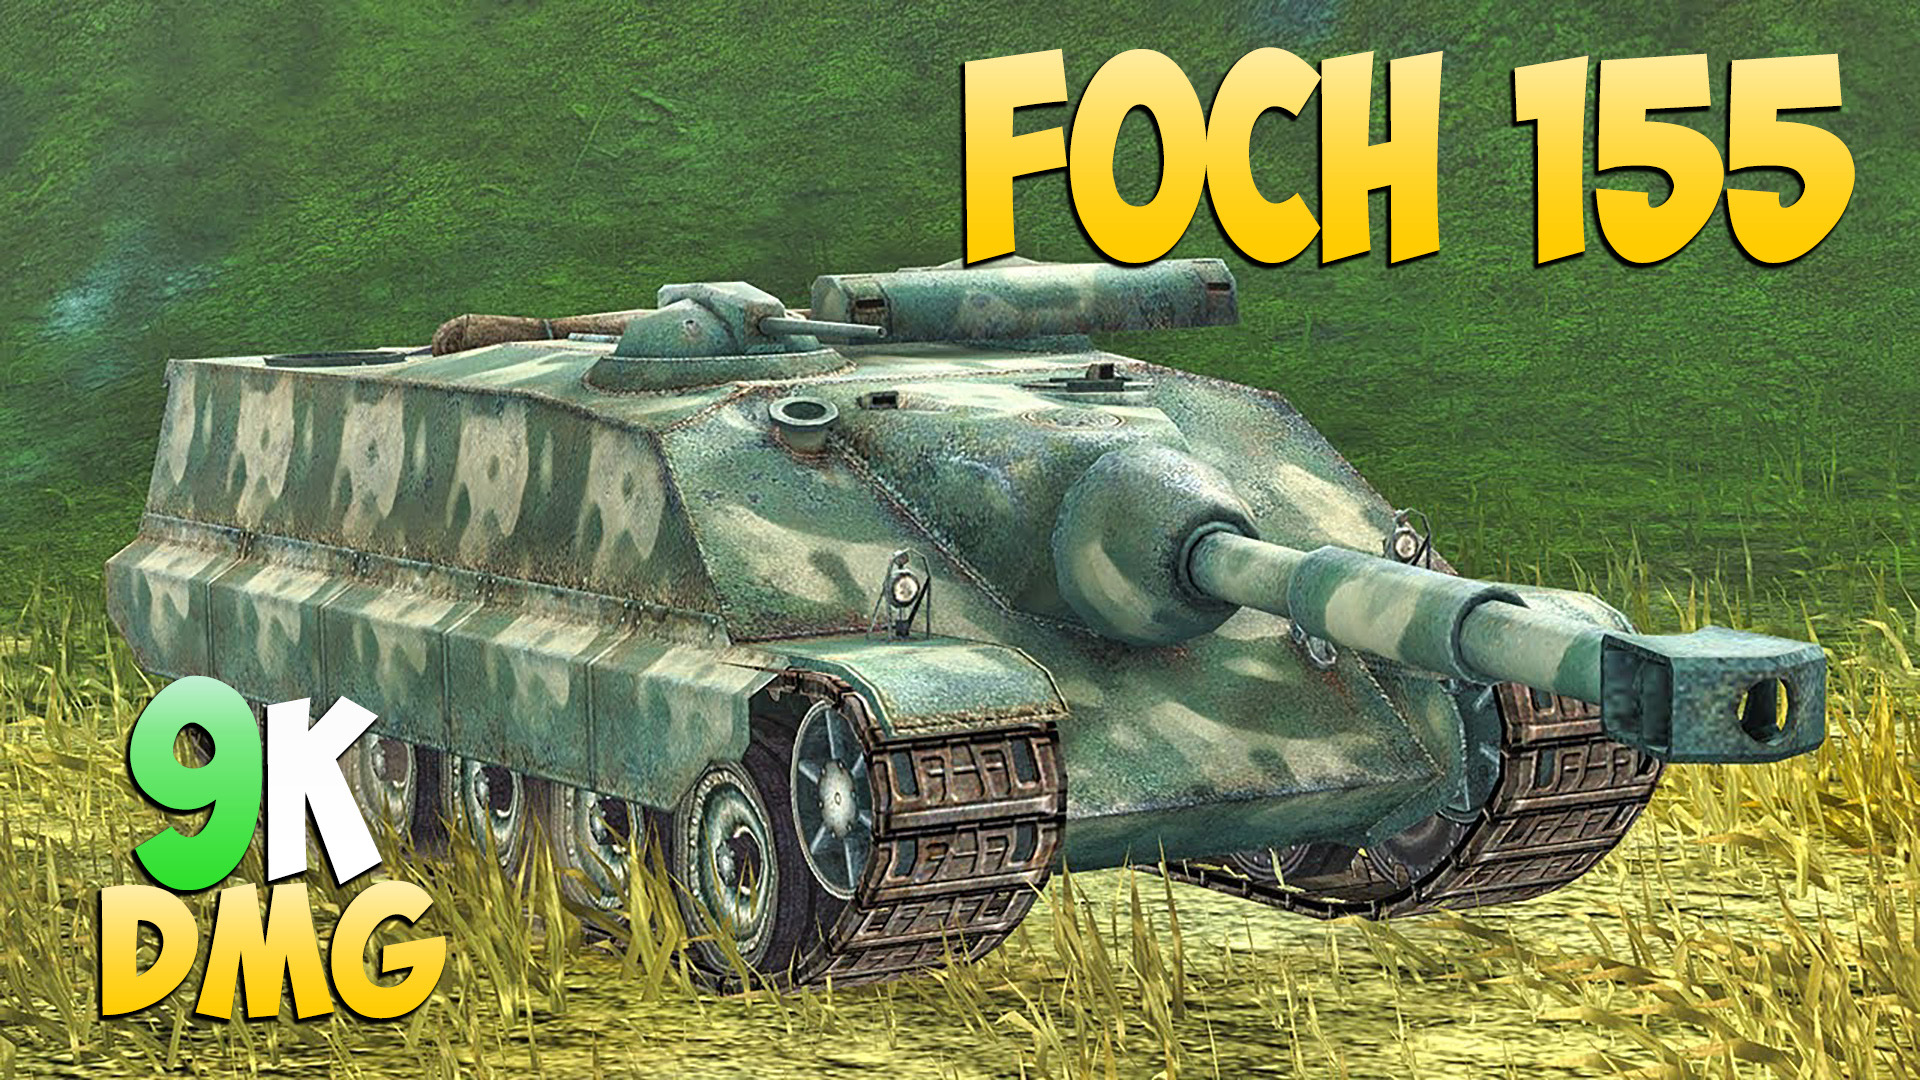 Foch 155 - 5 Фрагов 9K Урона - Привет из прошлого! - Мир Танков